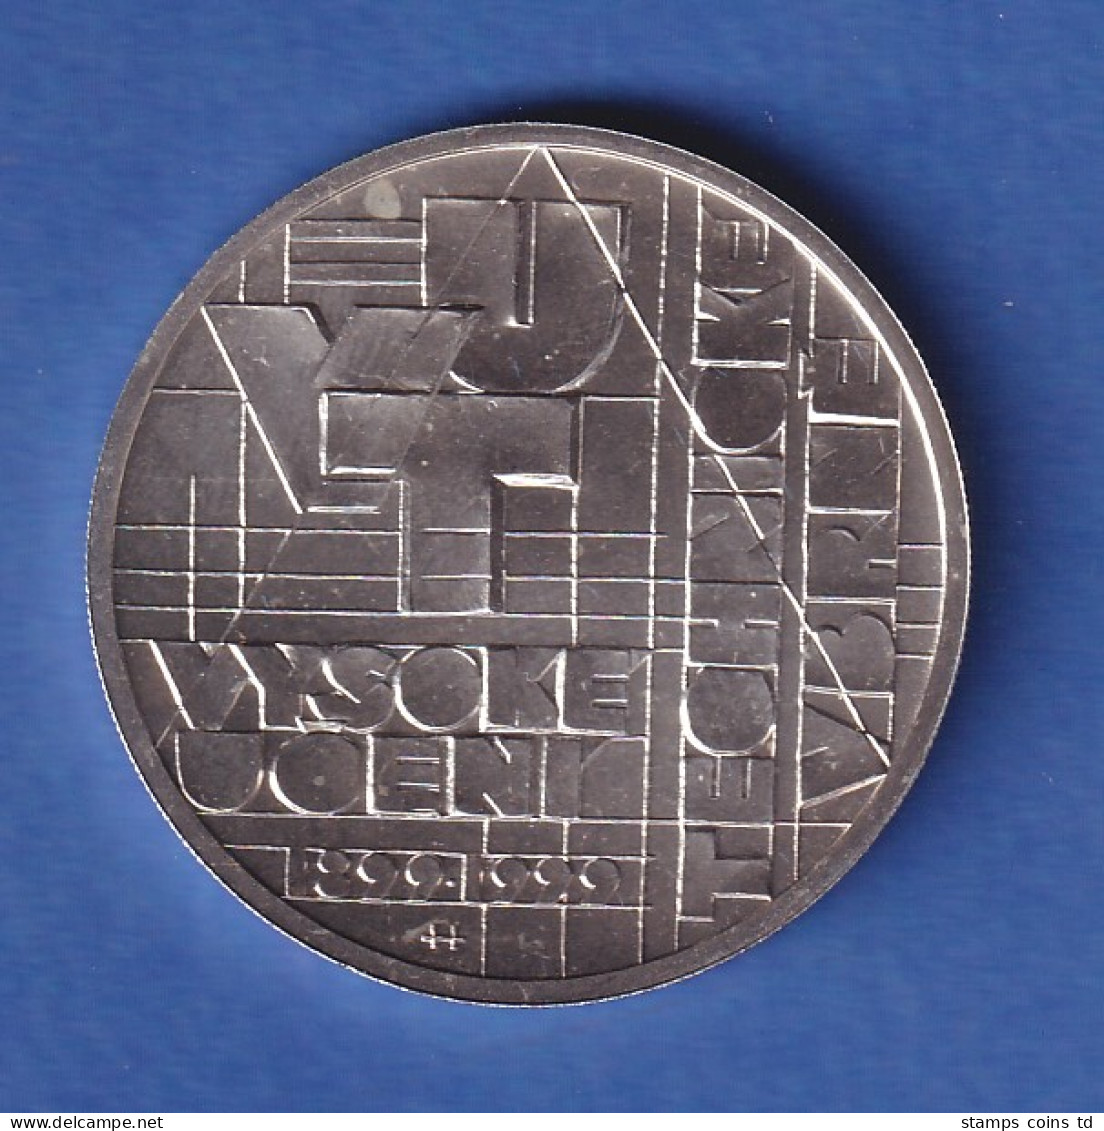 Tschechien 1999 Silbermünze 200 Kronen 100 Jahre Technische Universität Brünn St - Repubblica Ceca